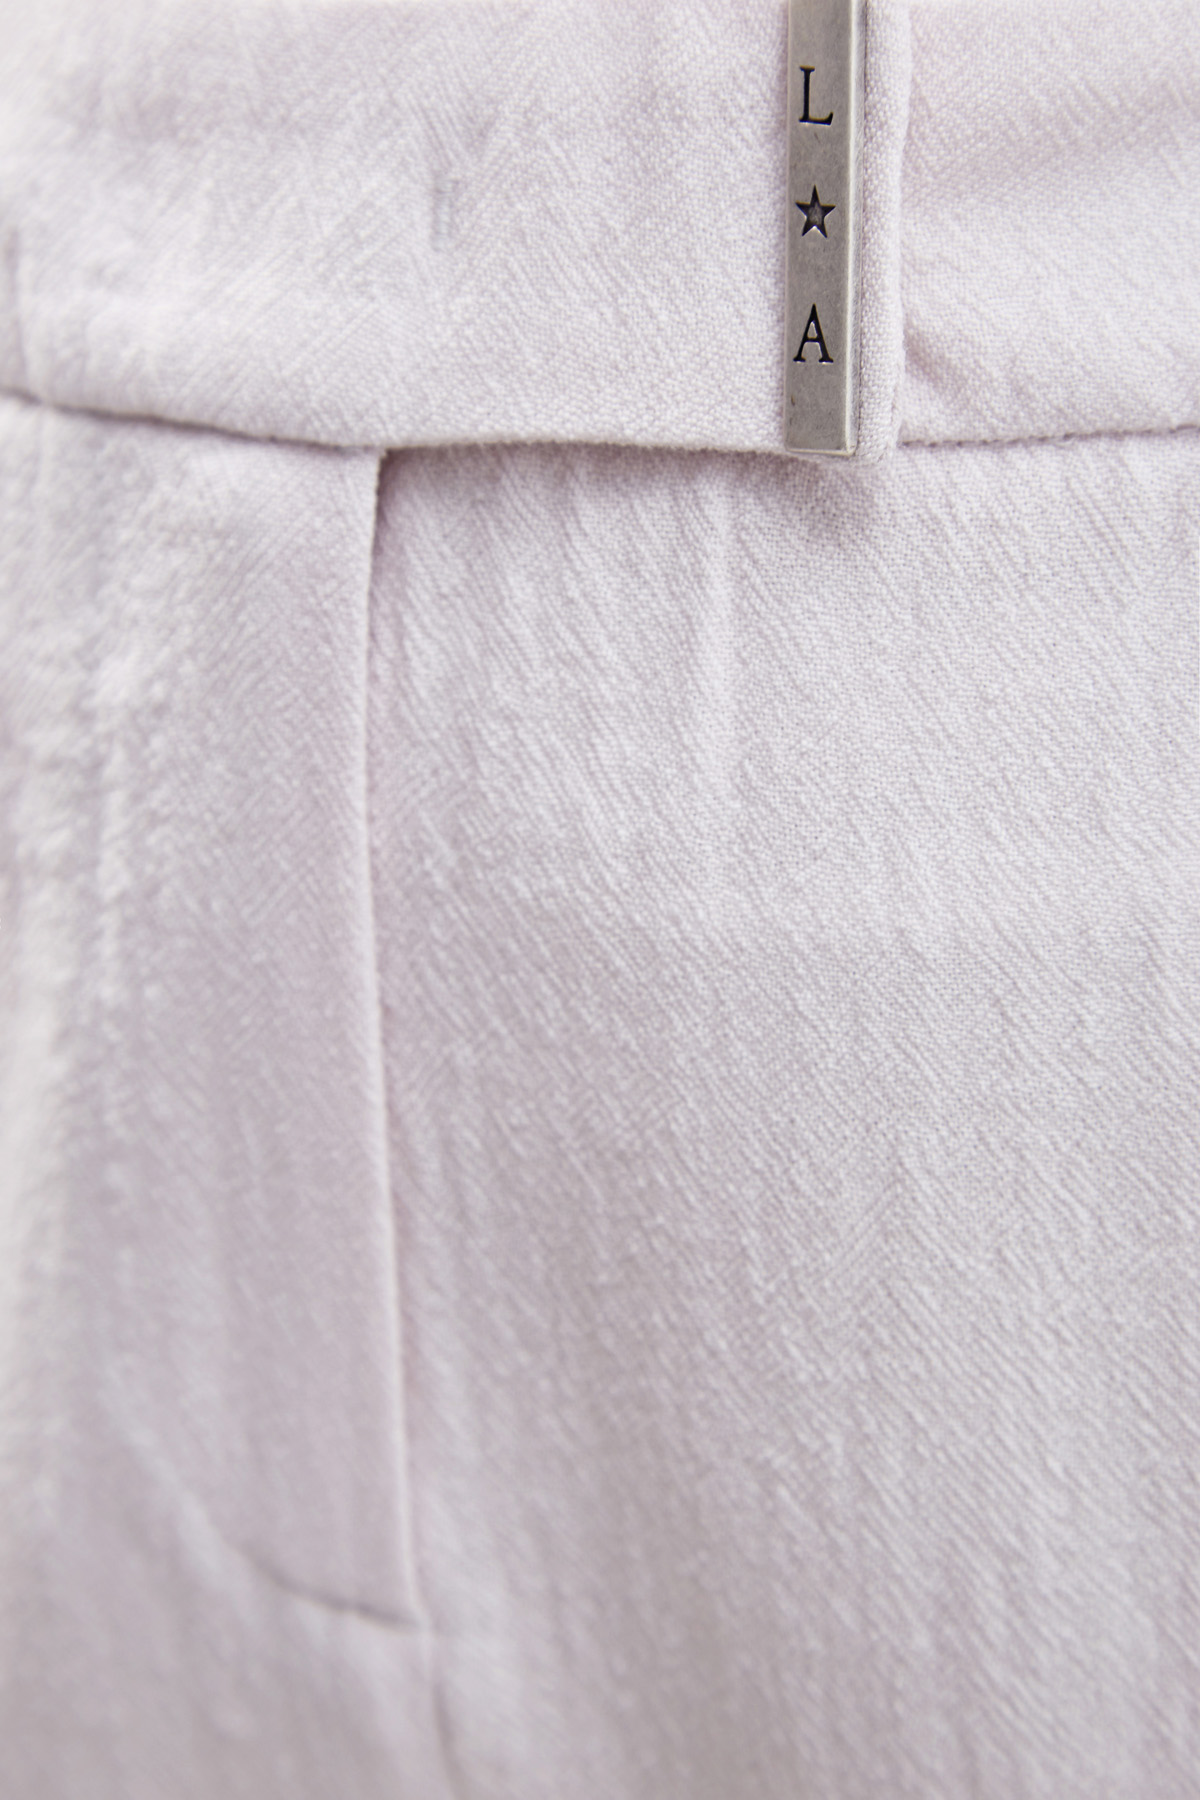 Брюки из фактурной шерстяной ткани с принтом «шеврон» LORENA ANTONIAZZI, цвет бежевый, размер 48;38 - фото 5